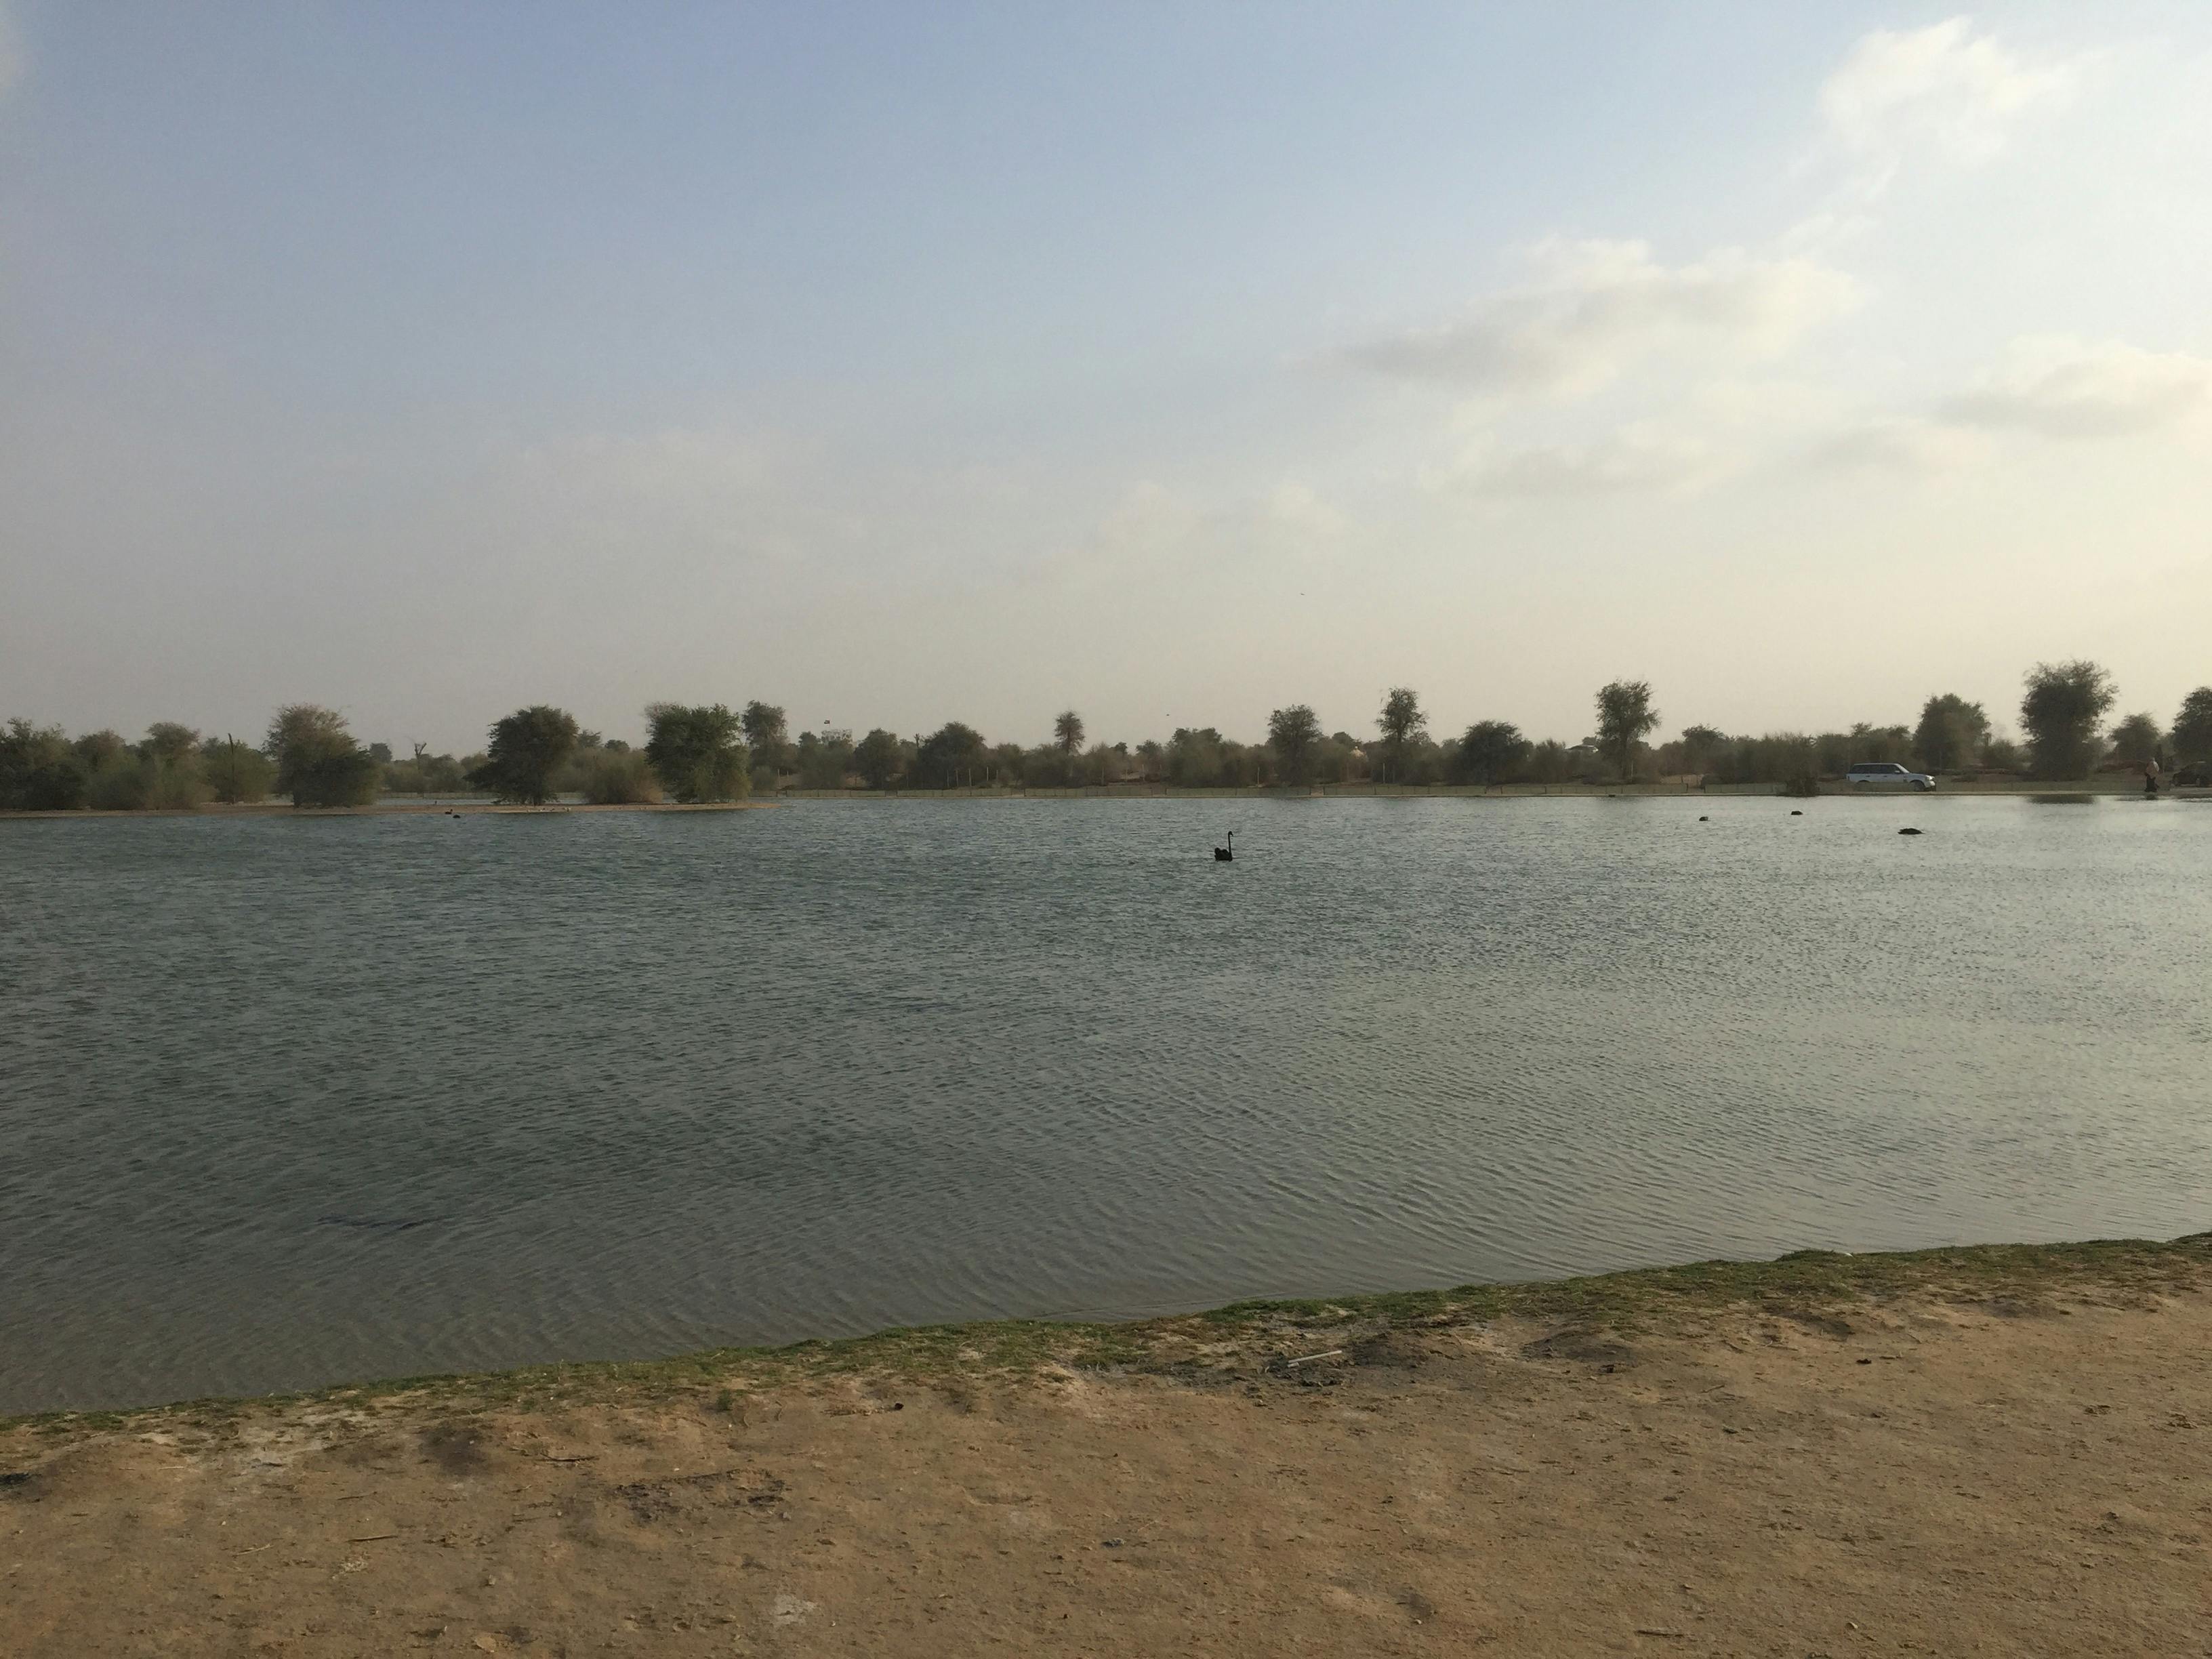 Free stock photo of Lake in Dubai, qudra lake, water front